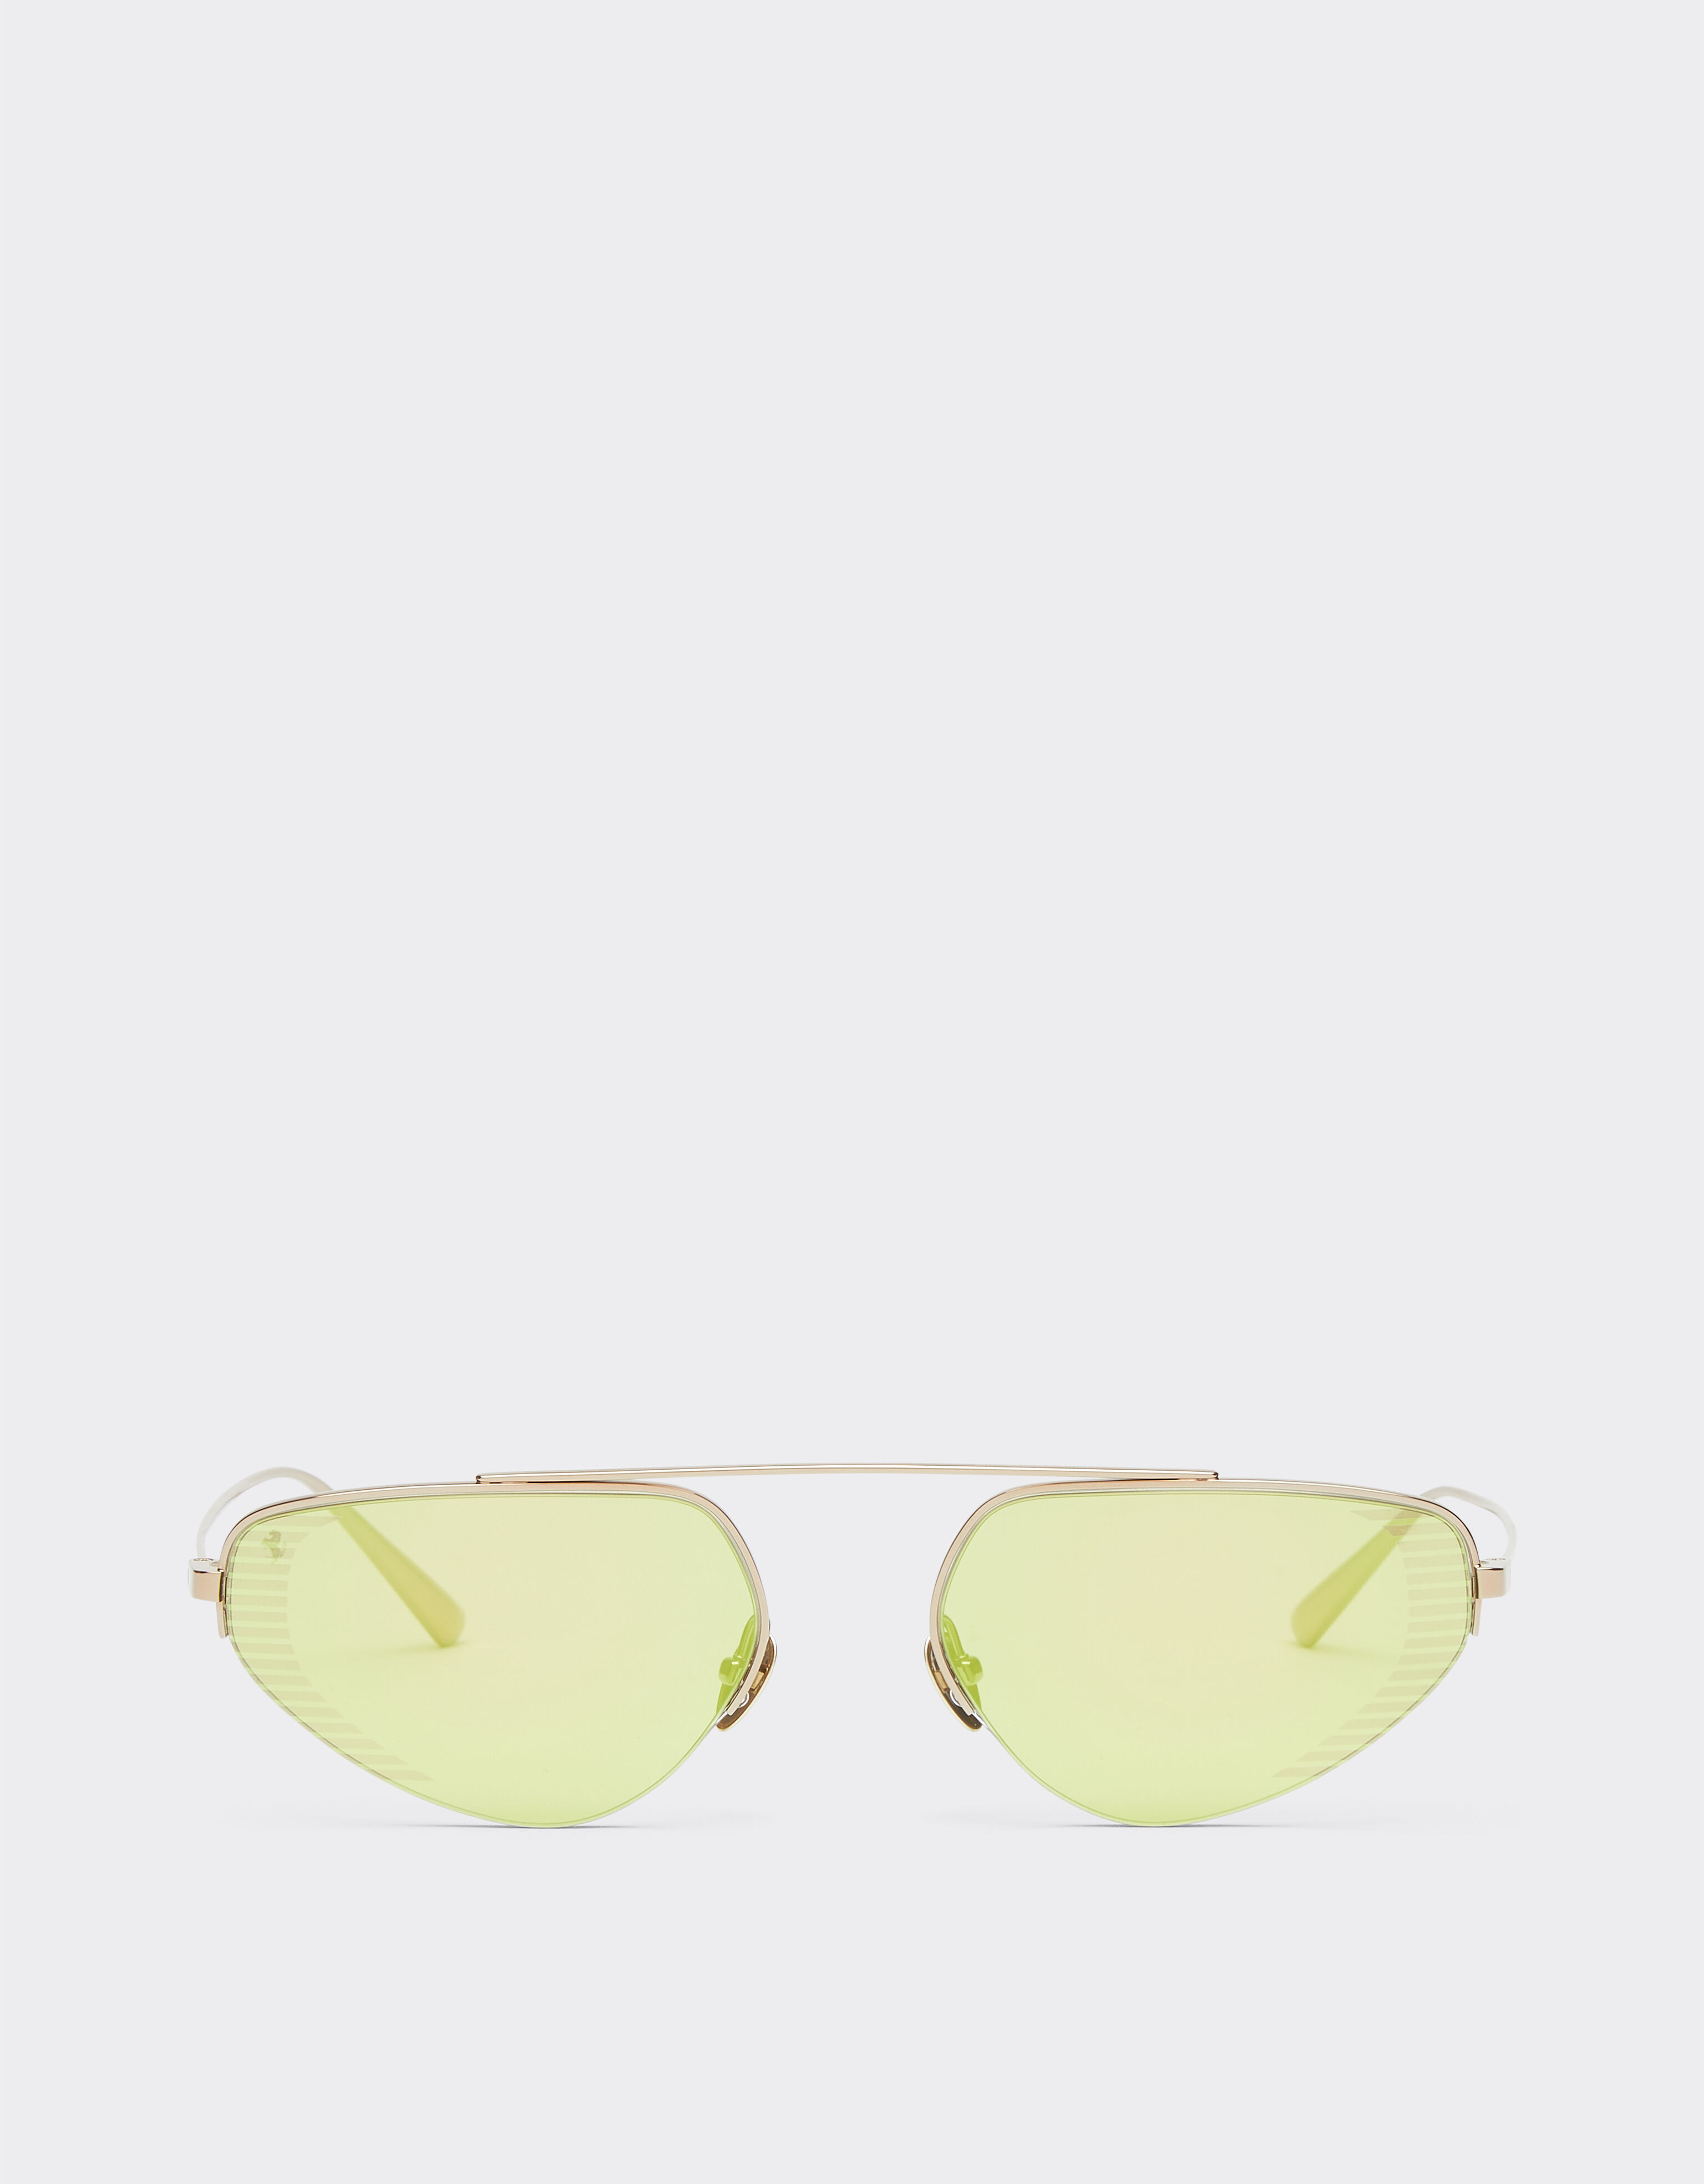 Ferrari Gafas de sol Ferrari de titanio dorado con lentes verdes de espejo Oro F1276f